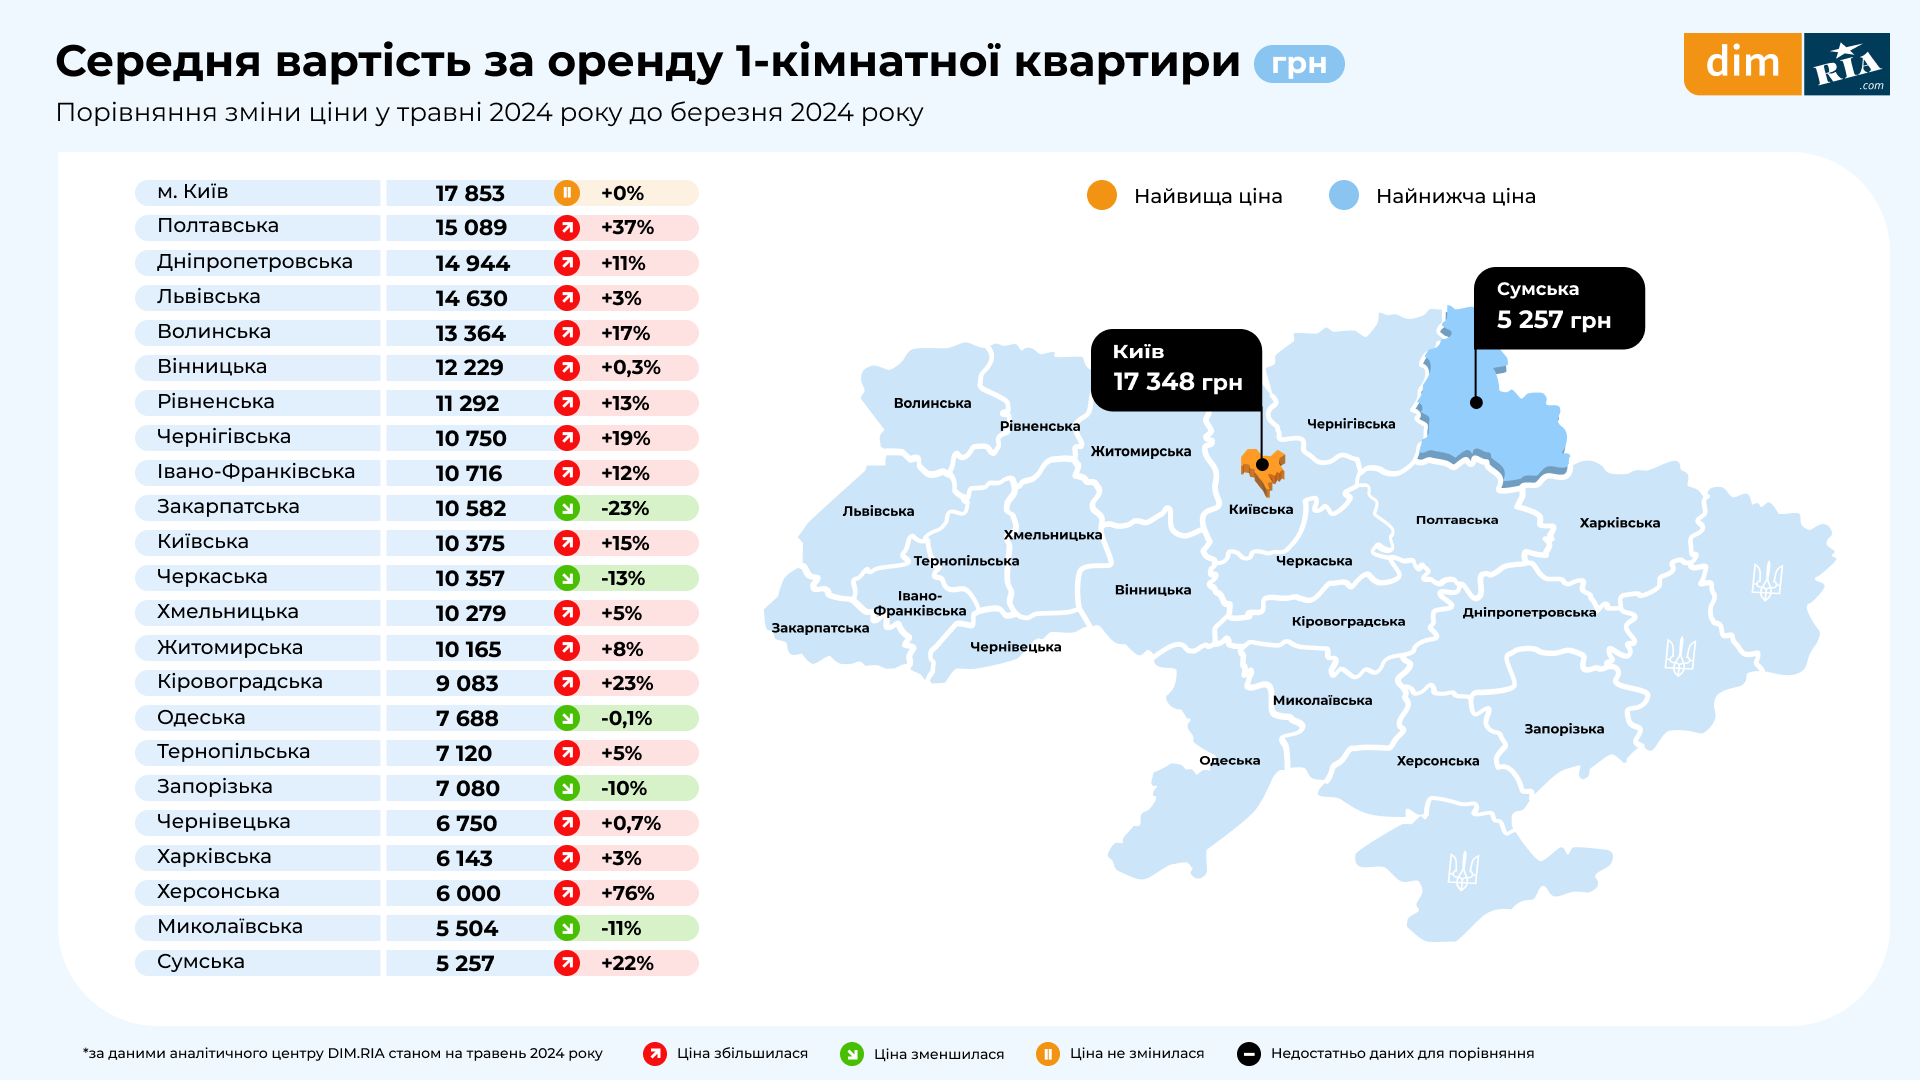 Практично по всій Україні змінили вартість оренди 1-кімнатних квартир